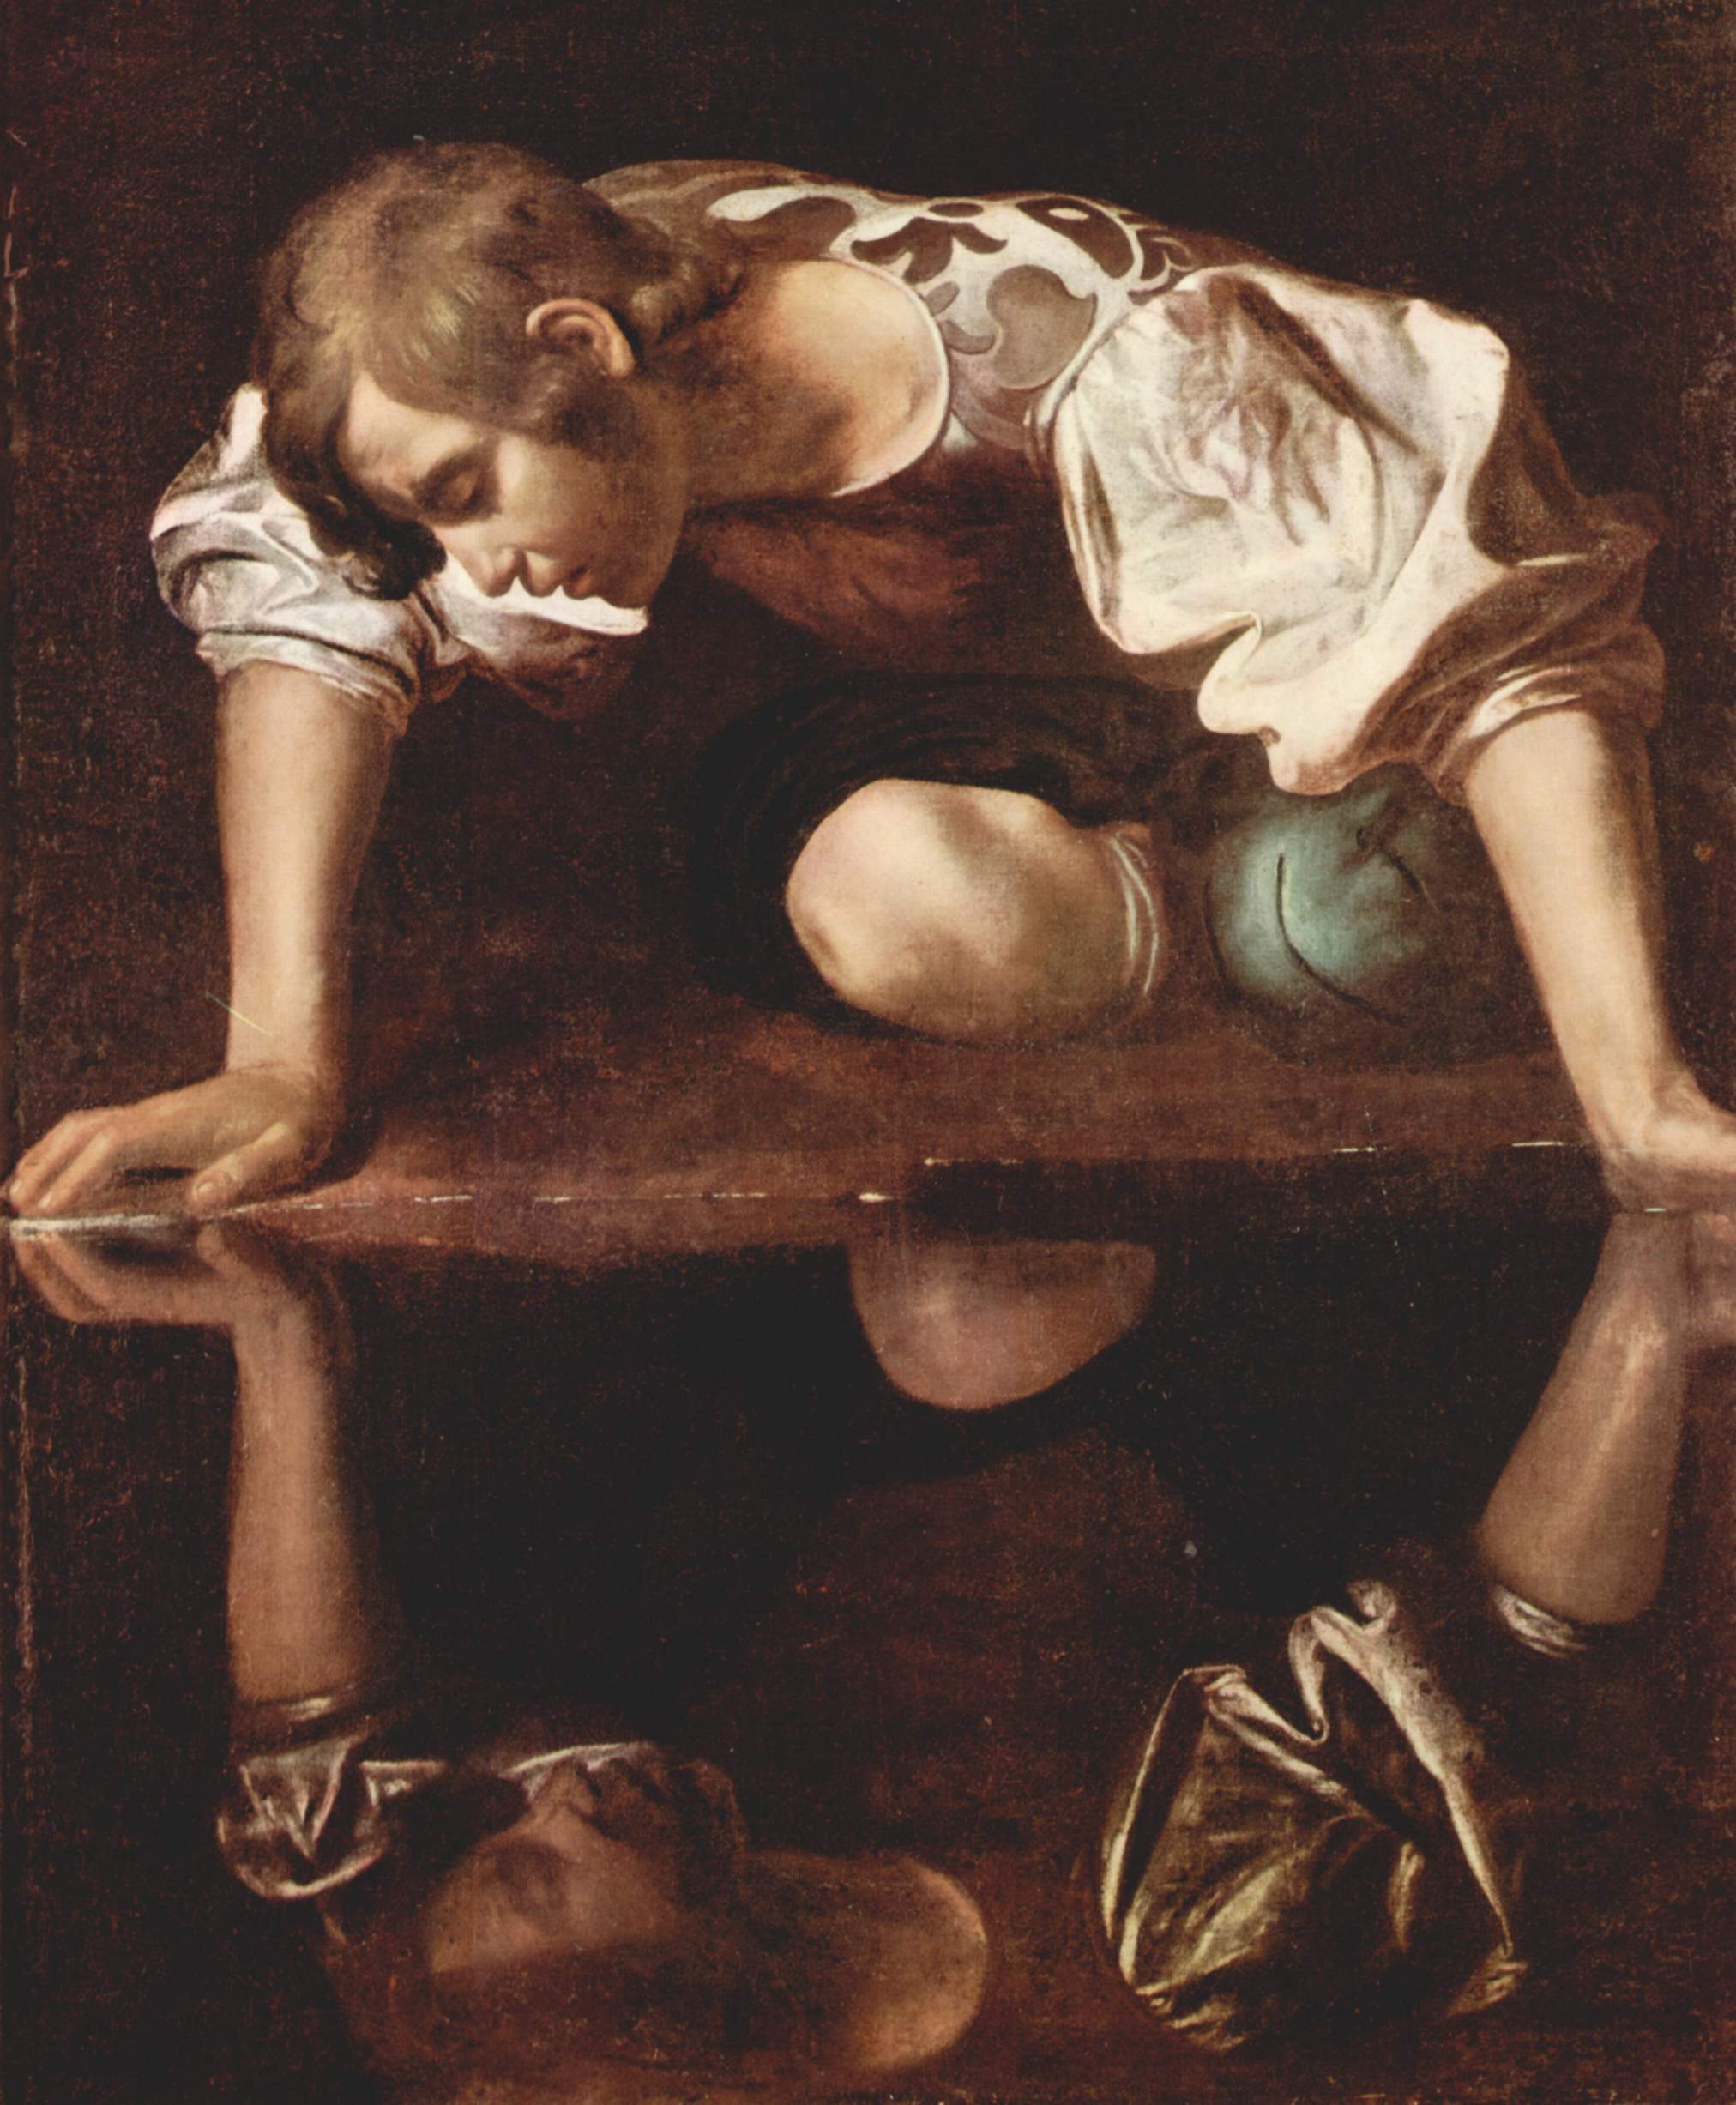 Narziss (Gemälde von Caravaggio, 16. Jh.) verliebte sich in sein Spiegelbild. Narzisstische Wesenszüge können sich negativ auf Psychotherapie auswirken, zeigt eine aktuelle Studie aus Jena und Münster